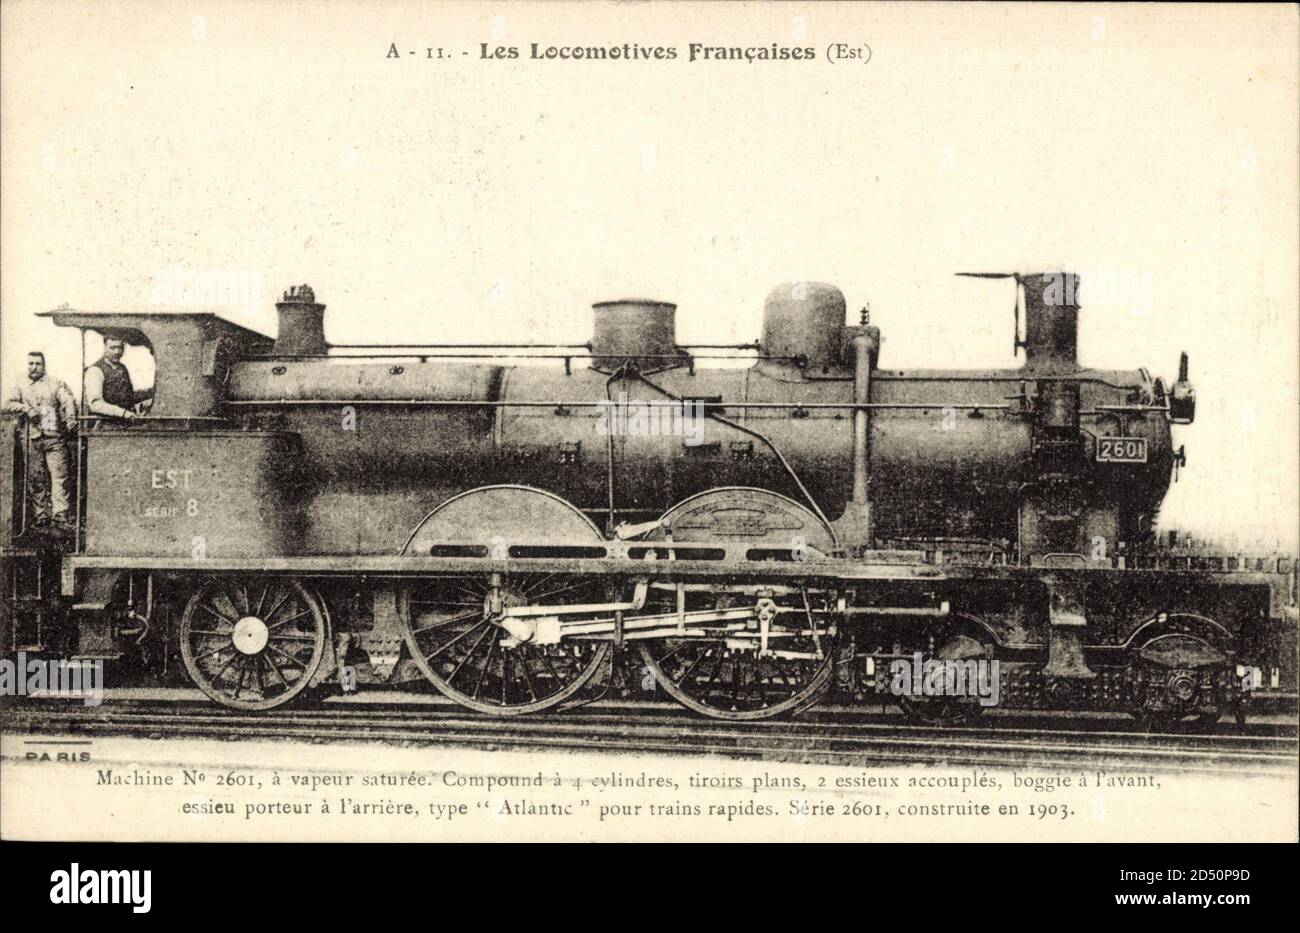 Les Locomotives Francaises, Est, Machine No. 2601, Vapeur saturee | usage worldwide Stock Photo